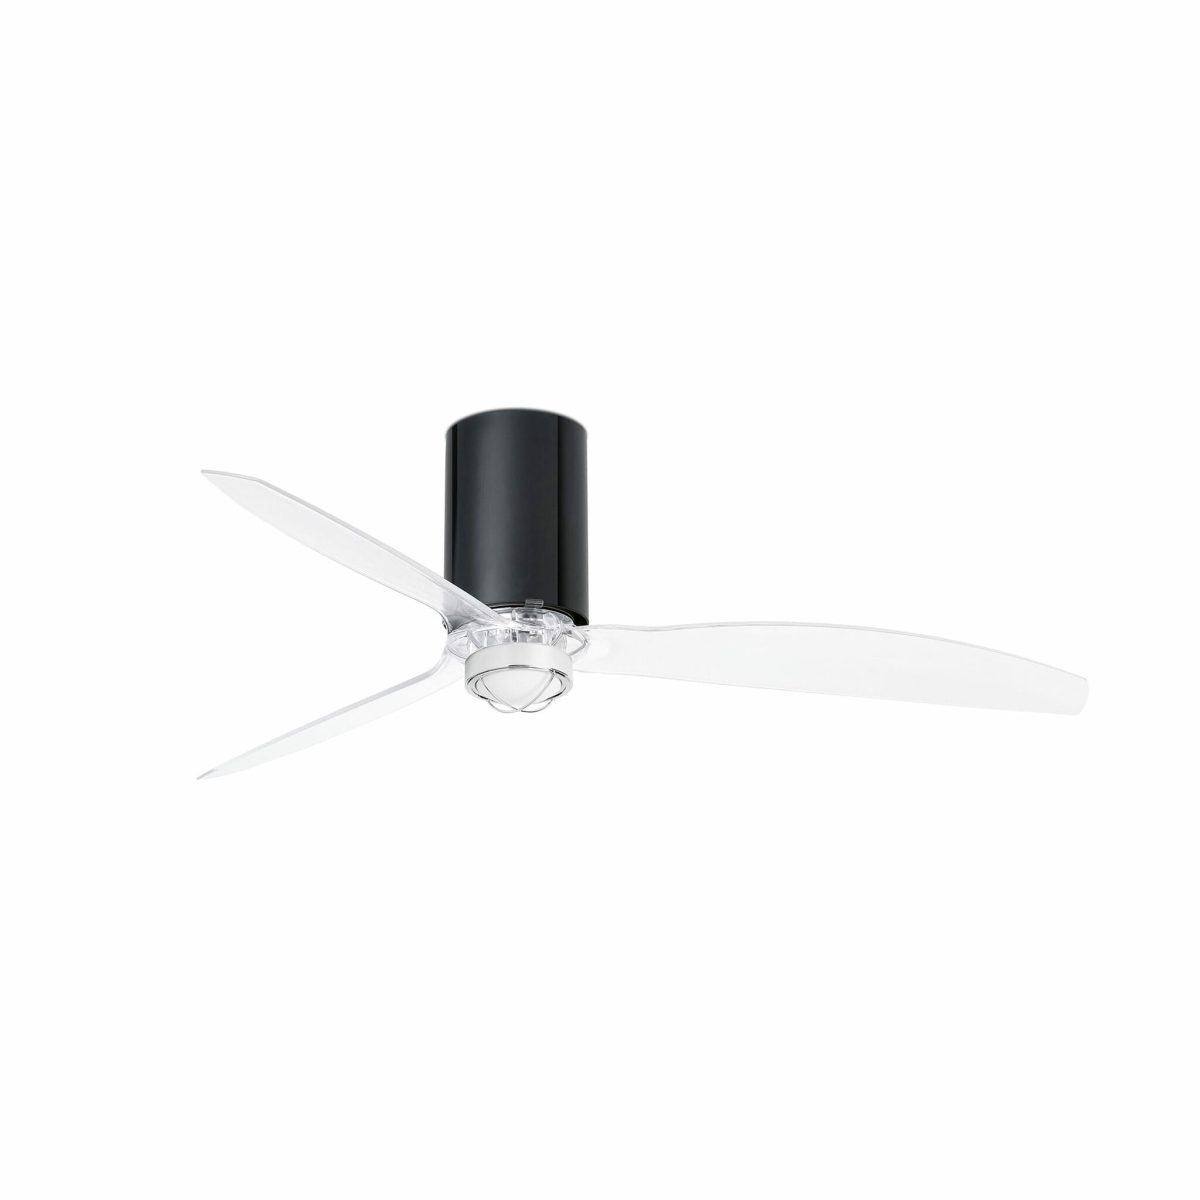 MINI TUBE FAN LED Ventilador de techo con luz de Faro. Medidas: Ø 1280 x L 1280 x A 324 x F 1280 mm. Color: Negro